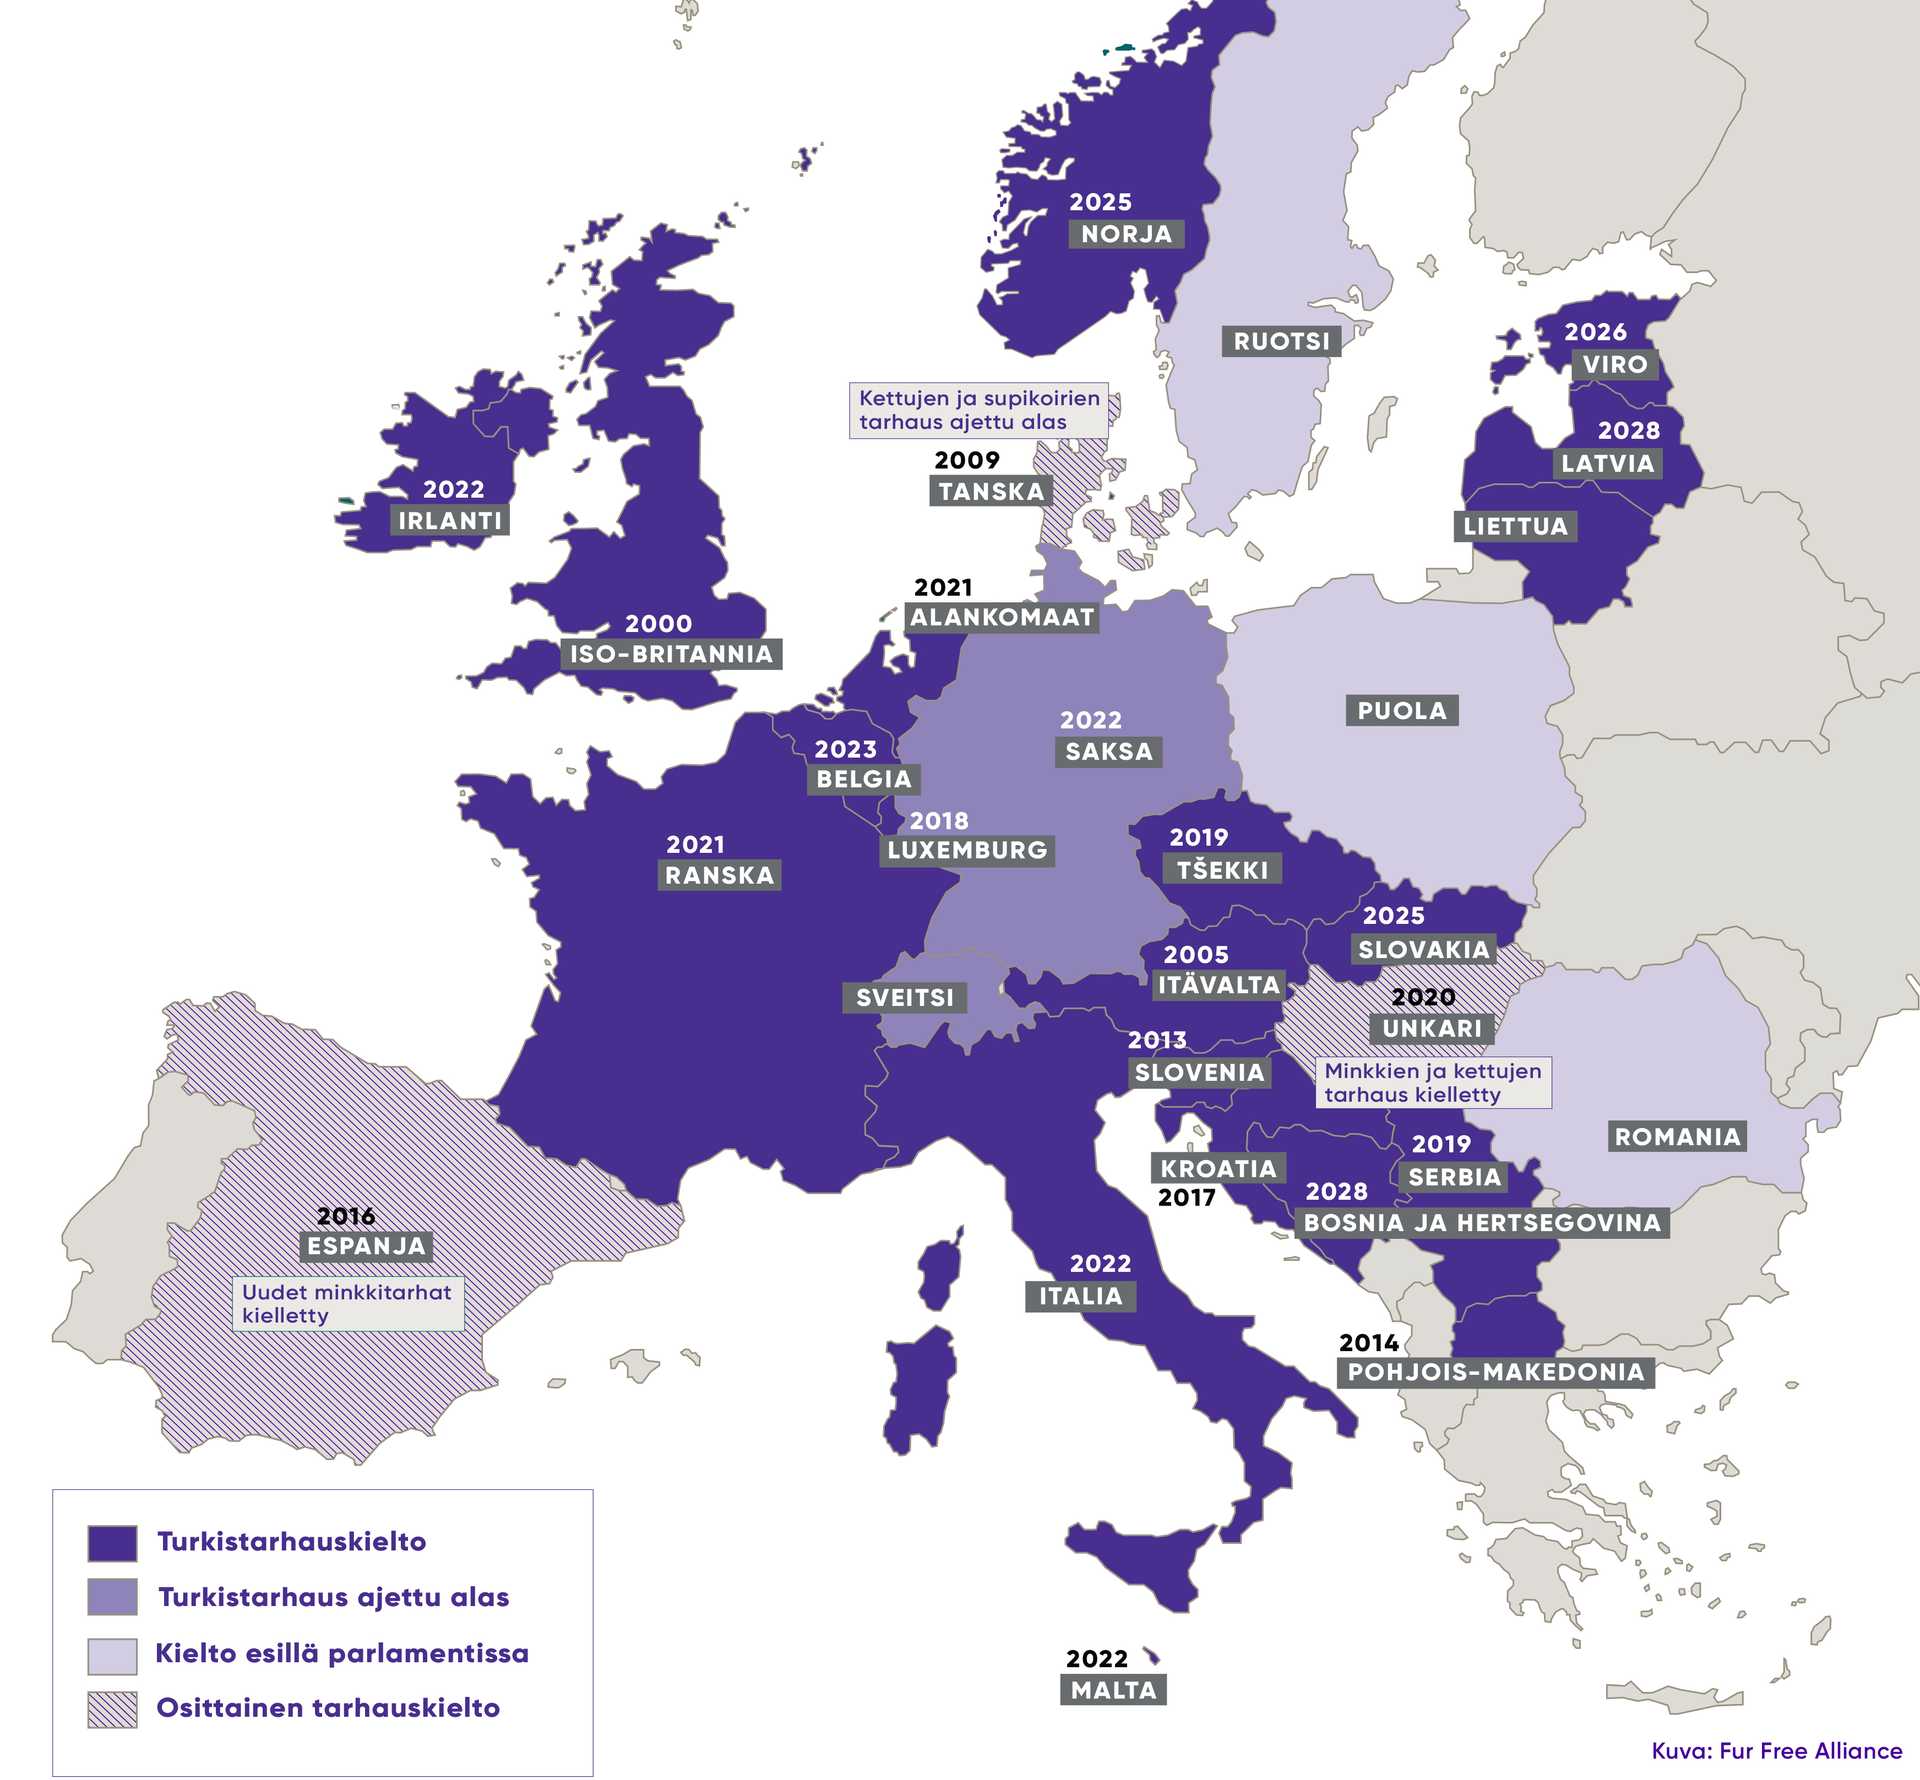 Suurin osa EU-maista on kieltänyt turkistarhauksen kokonaan tai osittain. Nämä maat on merkitty karttaan violetilla.